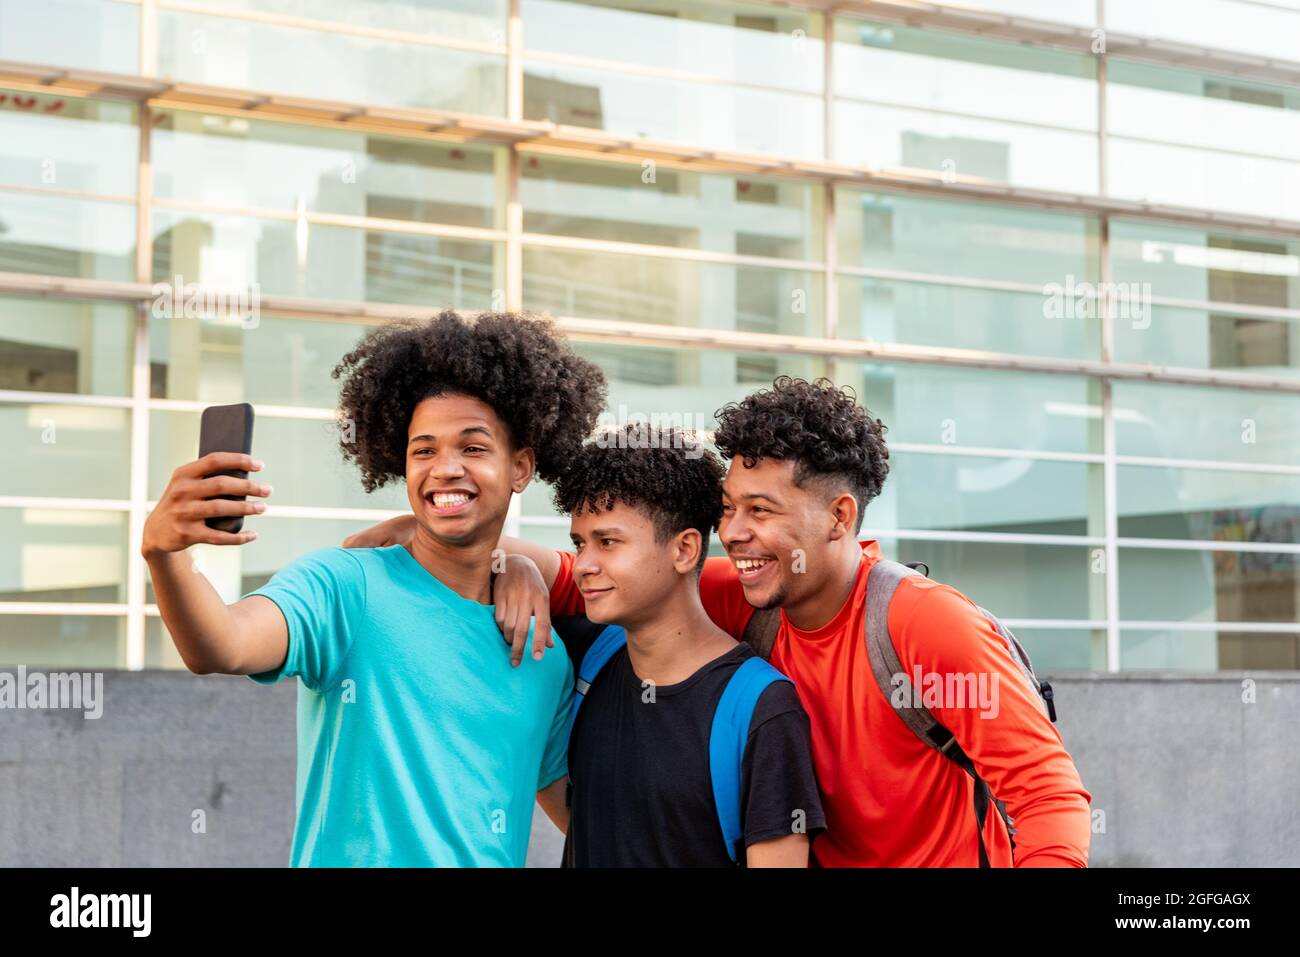 Multiethnic friends taking selfie in the street Stock Photo